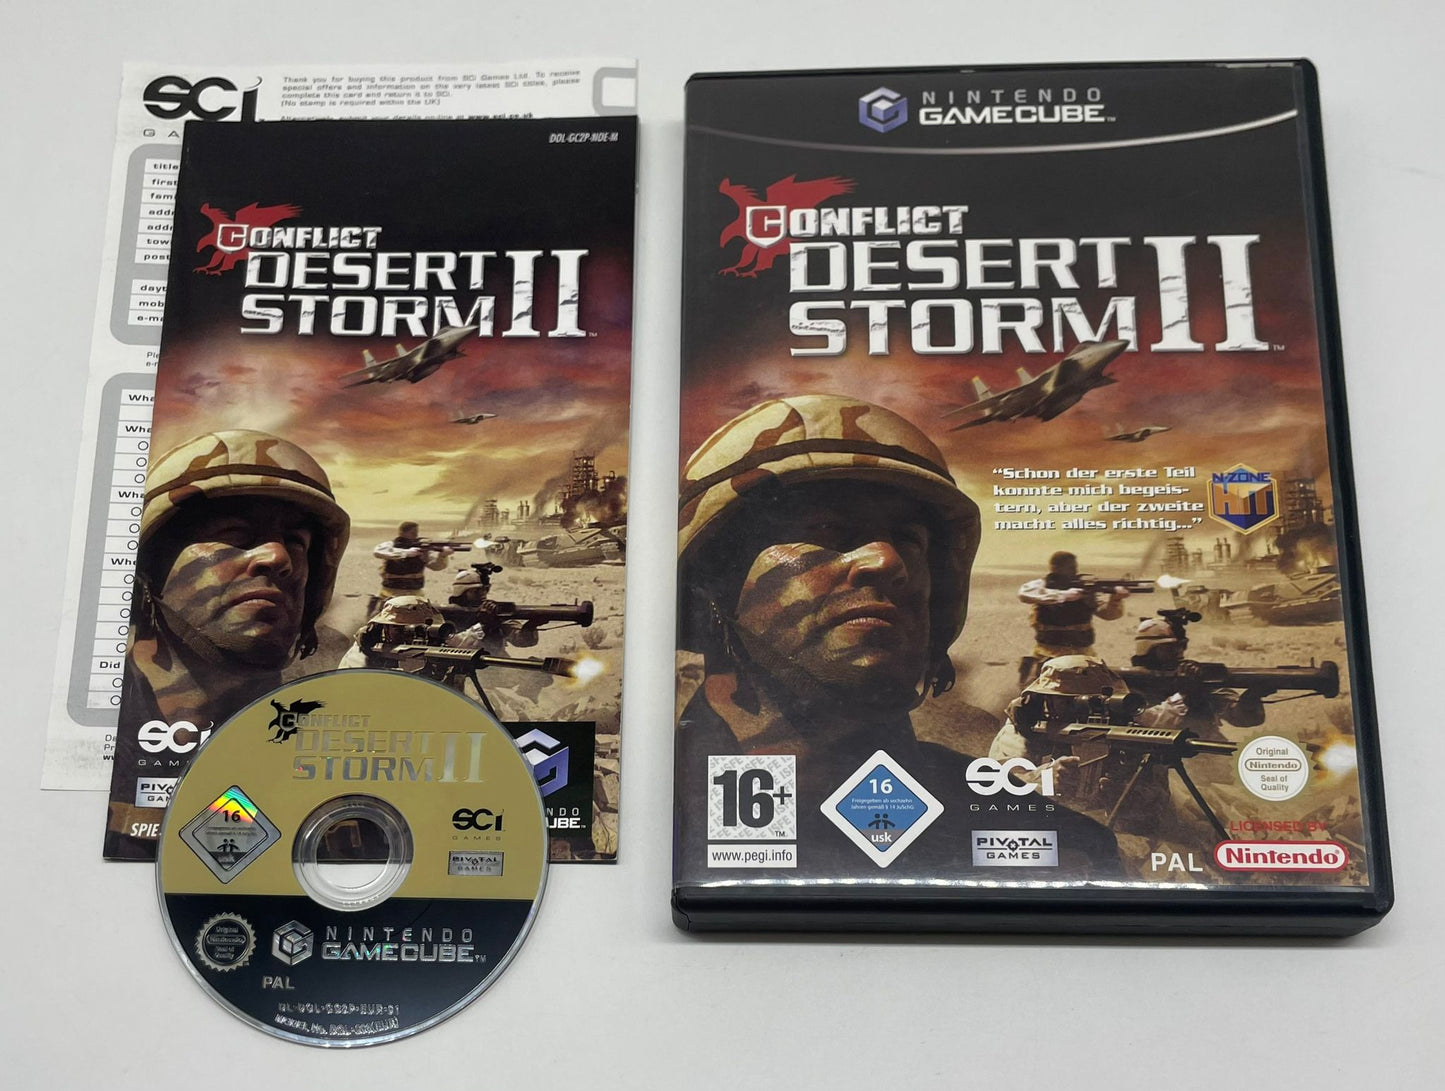 Conflict: Desert Storm II OVP